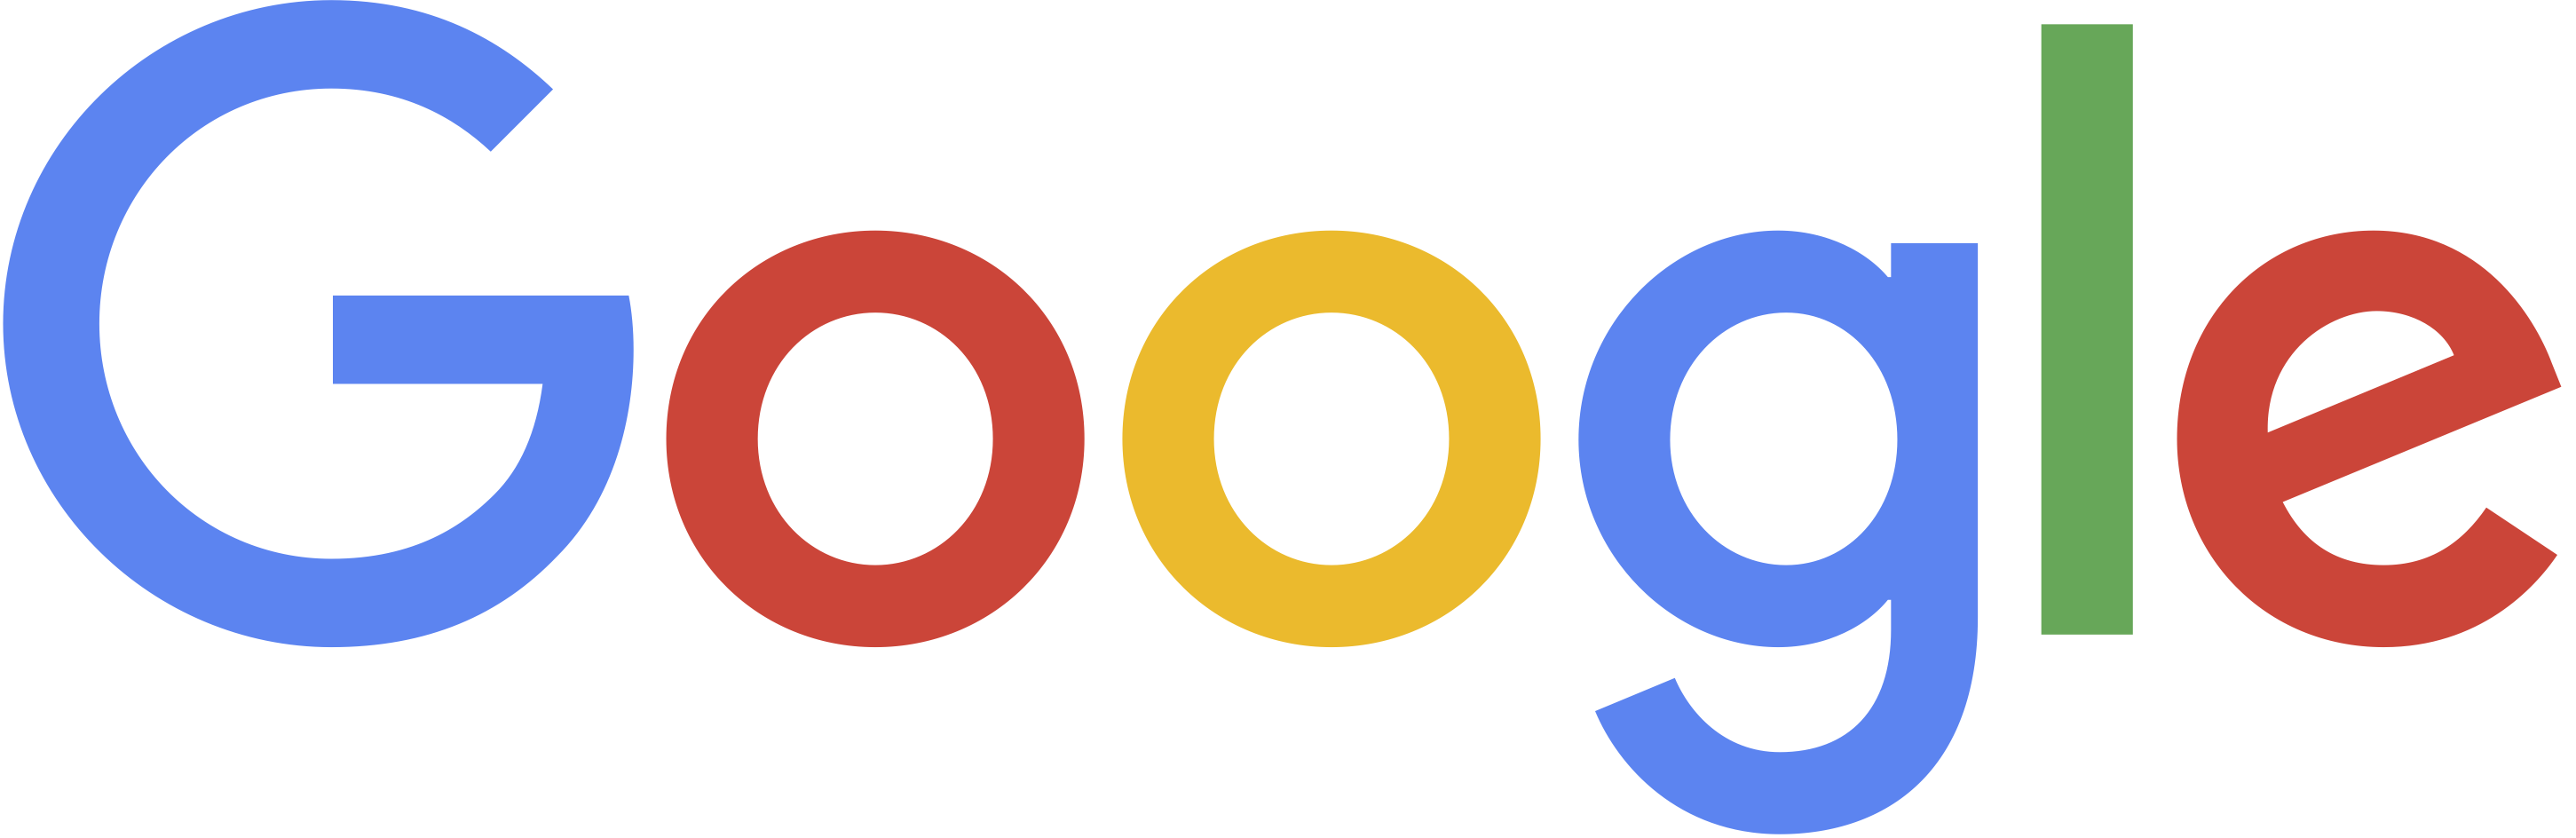 グーグル株式会社